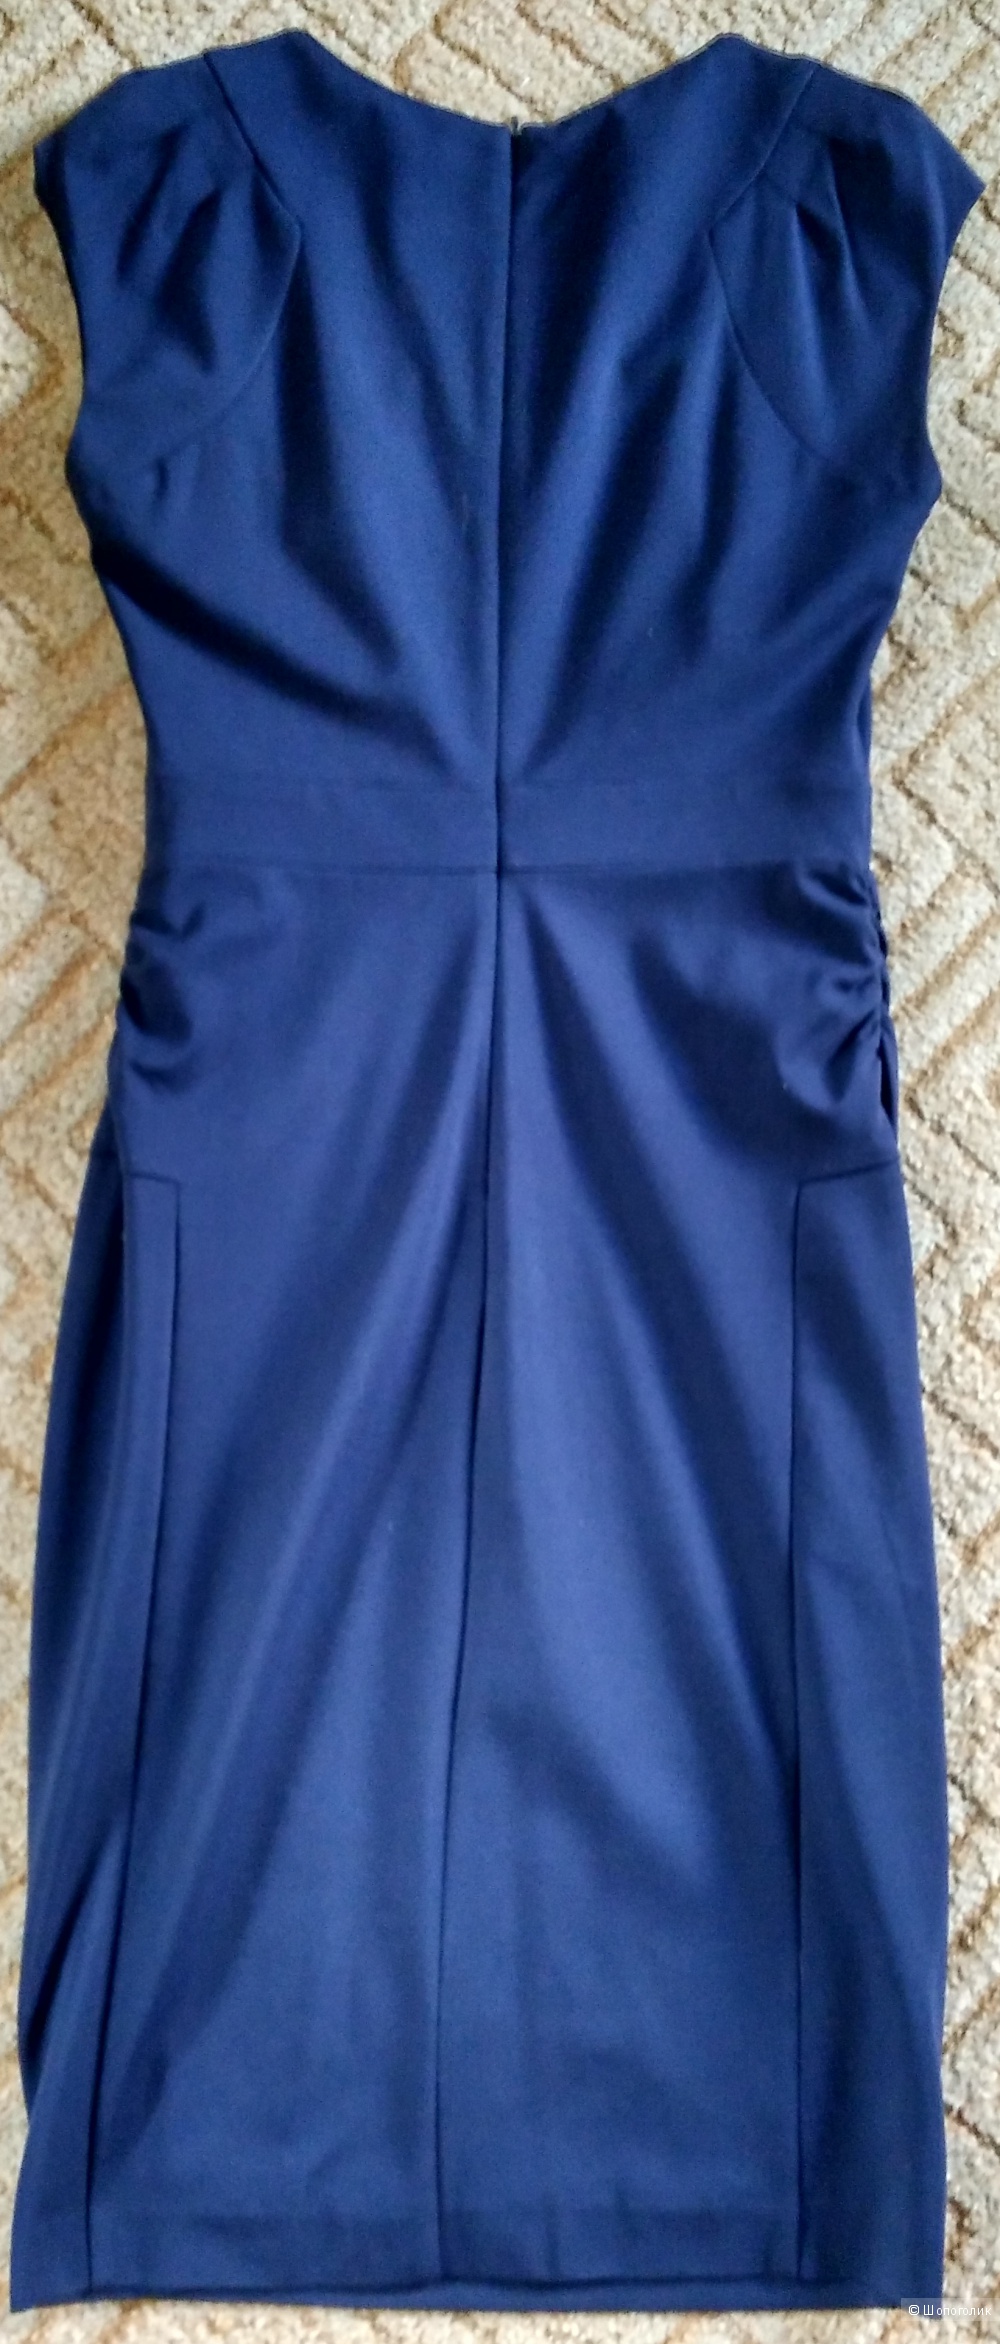 Темно-синее платье Mexx размер 46